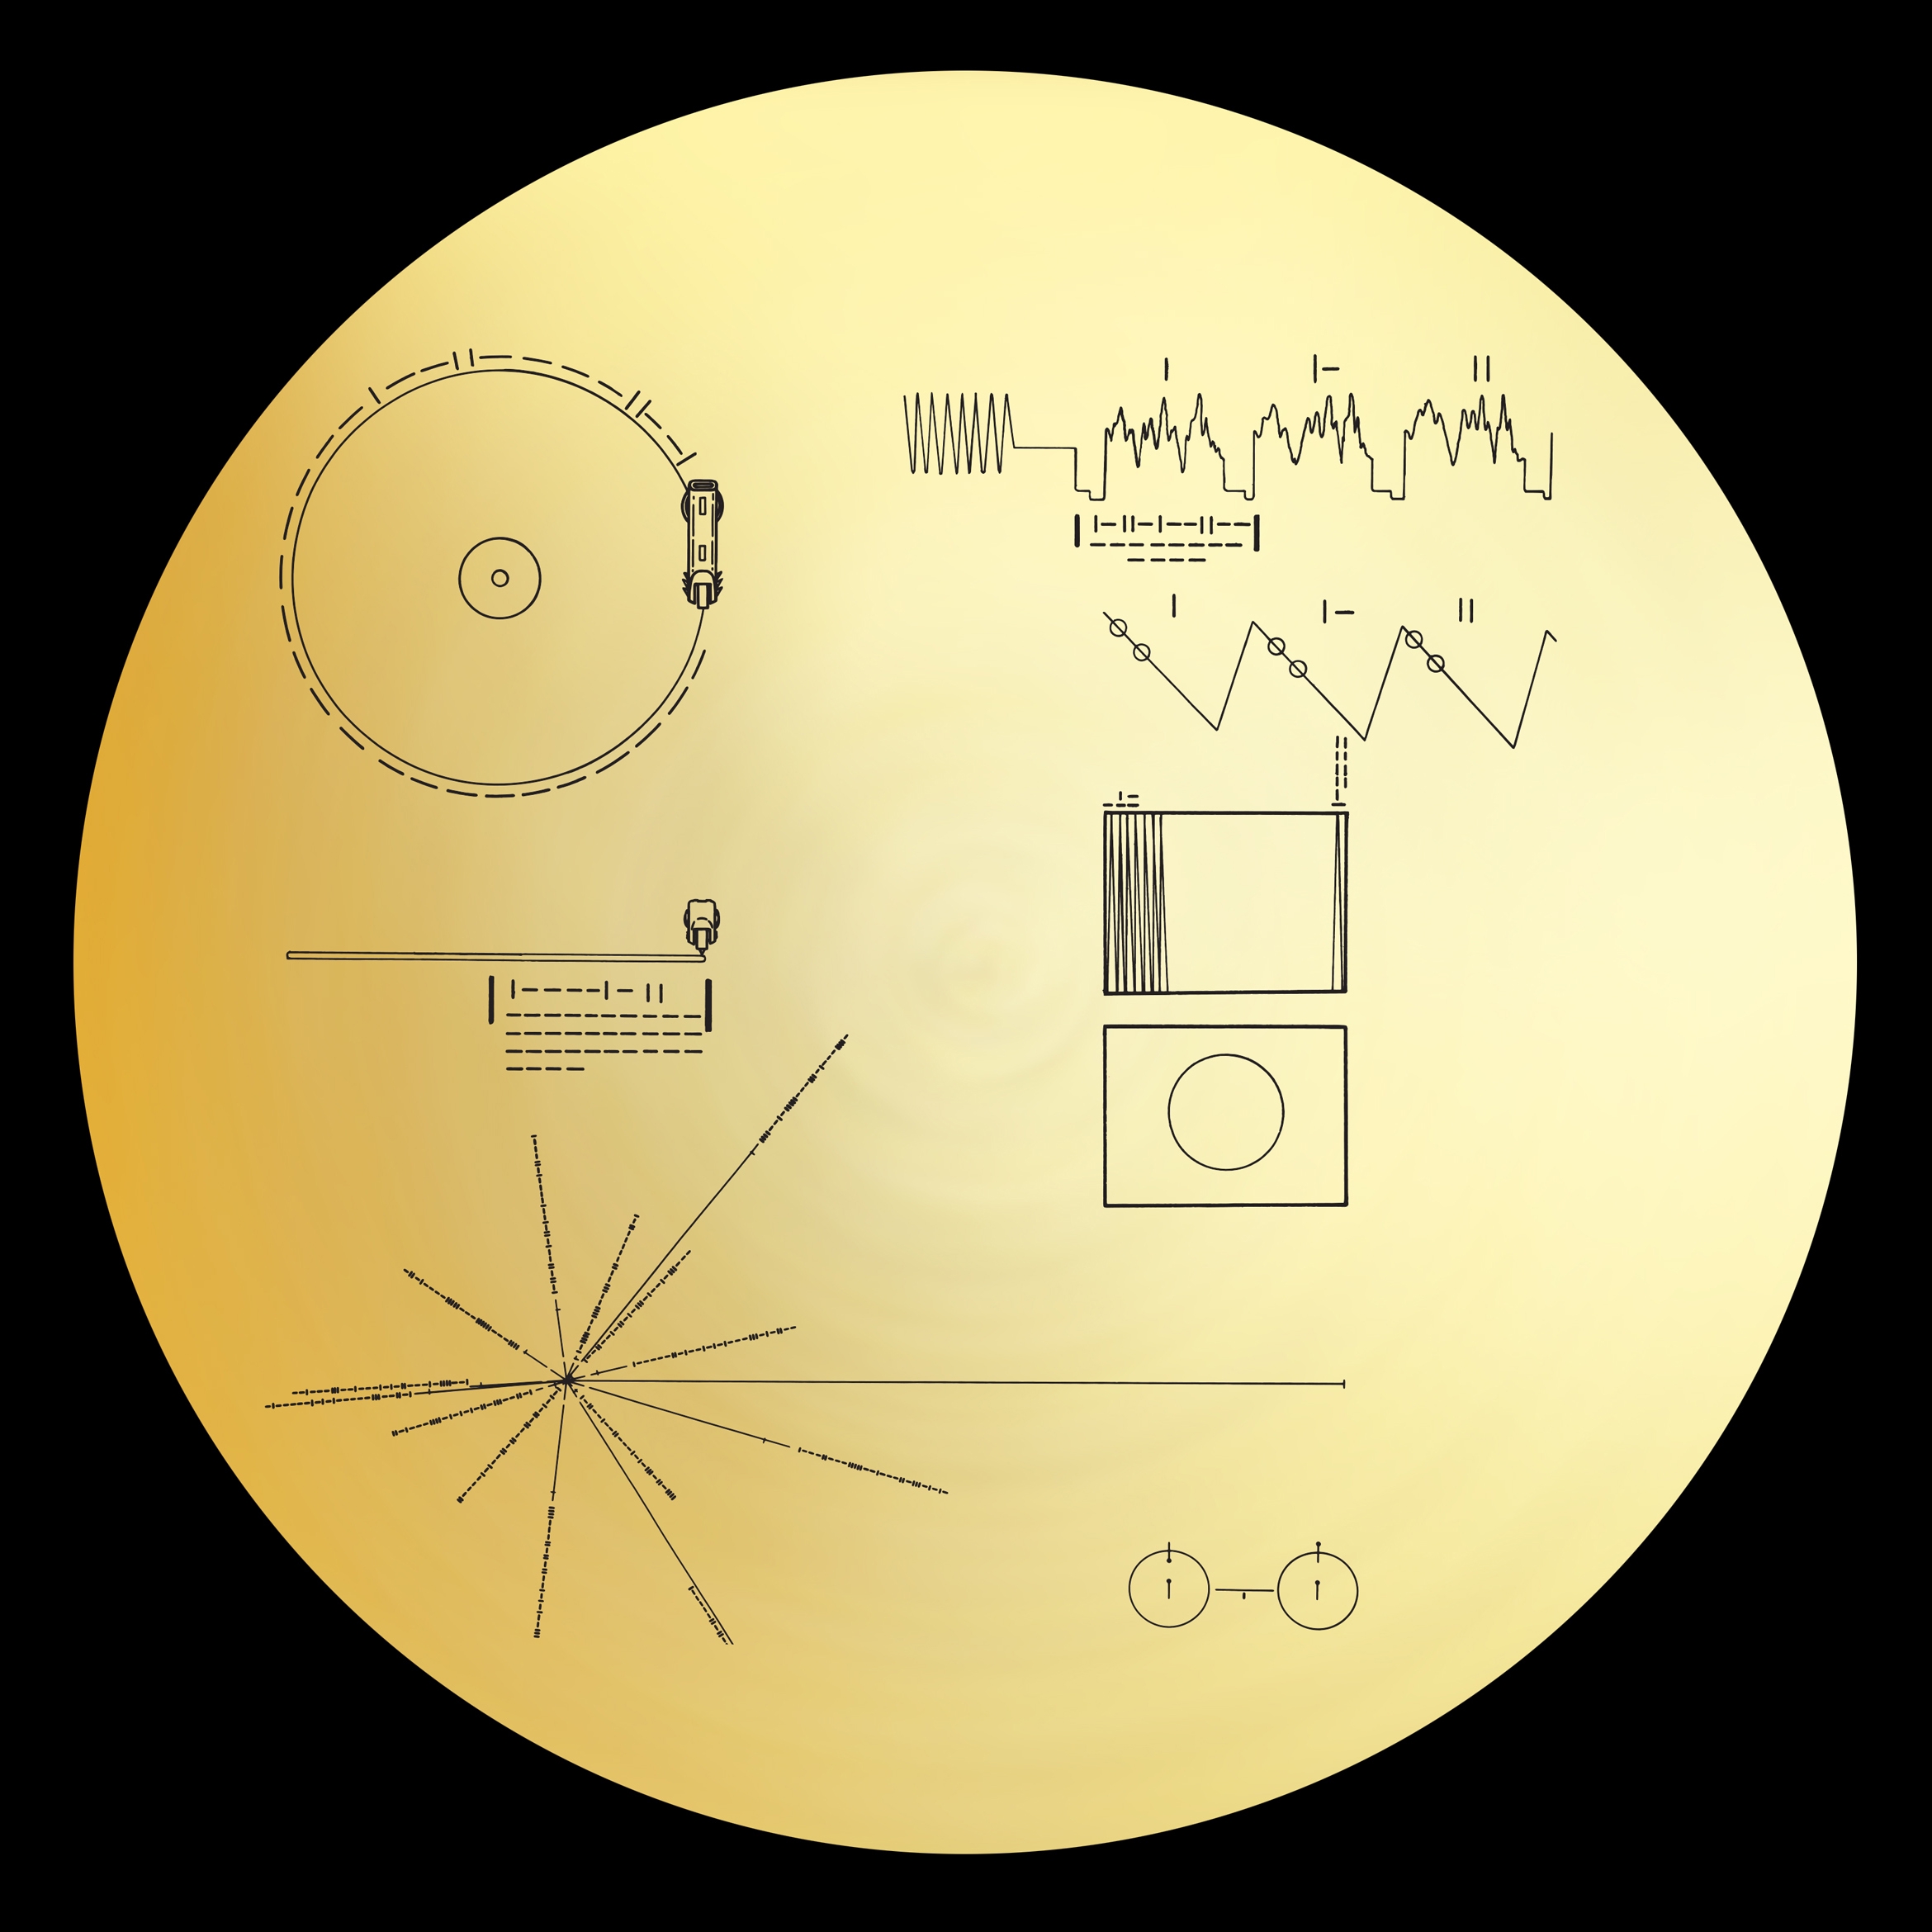 voyager spacecraft disc